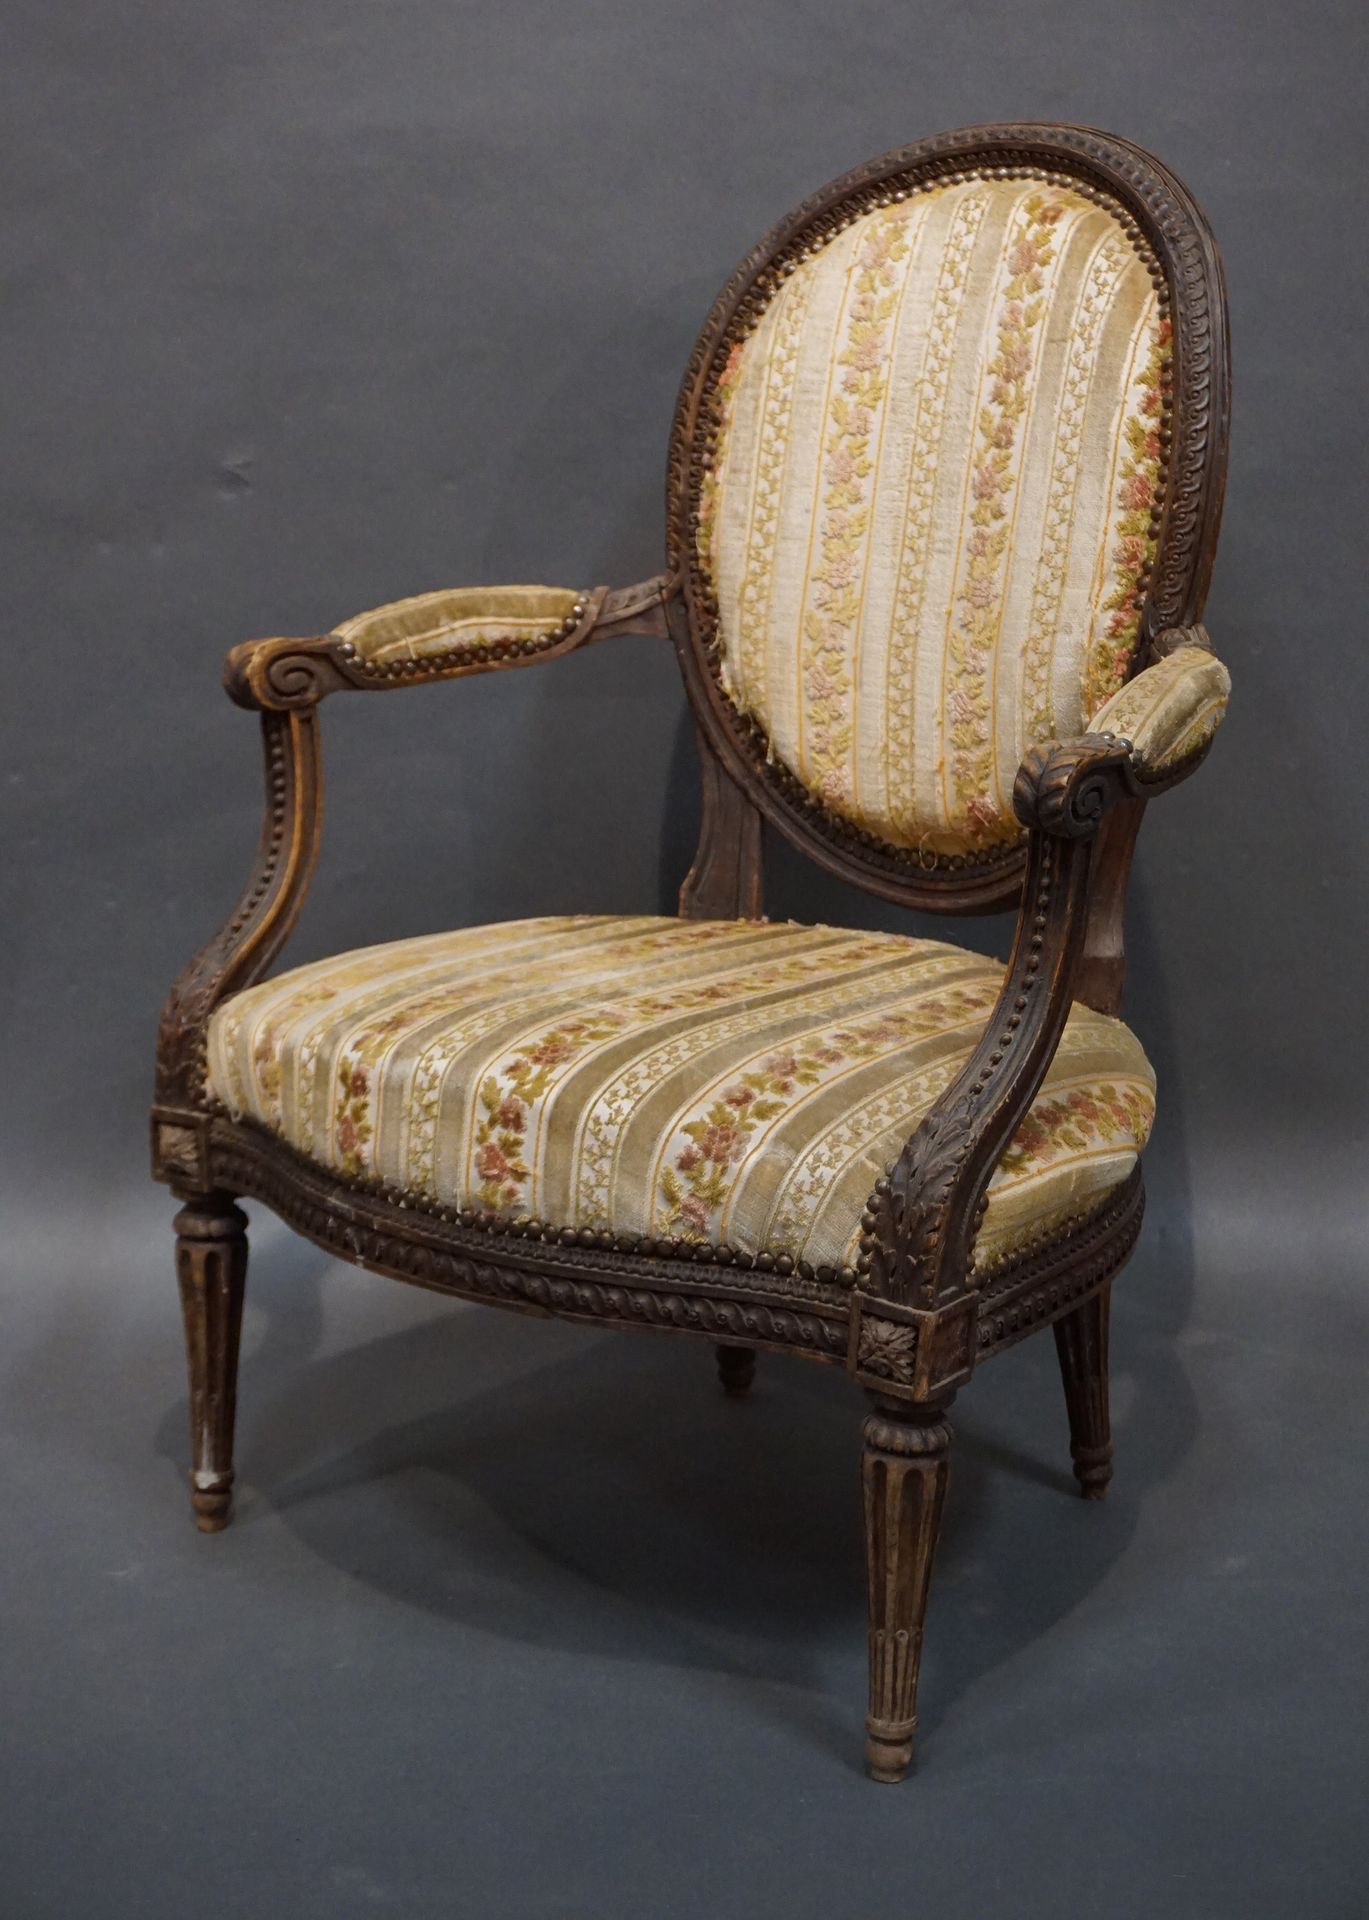 FAUTEUIL 
奖章扶手椅，采用天然木雕，有凹槽和细长的腿，用条纹天鹅绒做软垫。路易十六时期（事故，修复）。87x65x60厘米